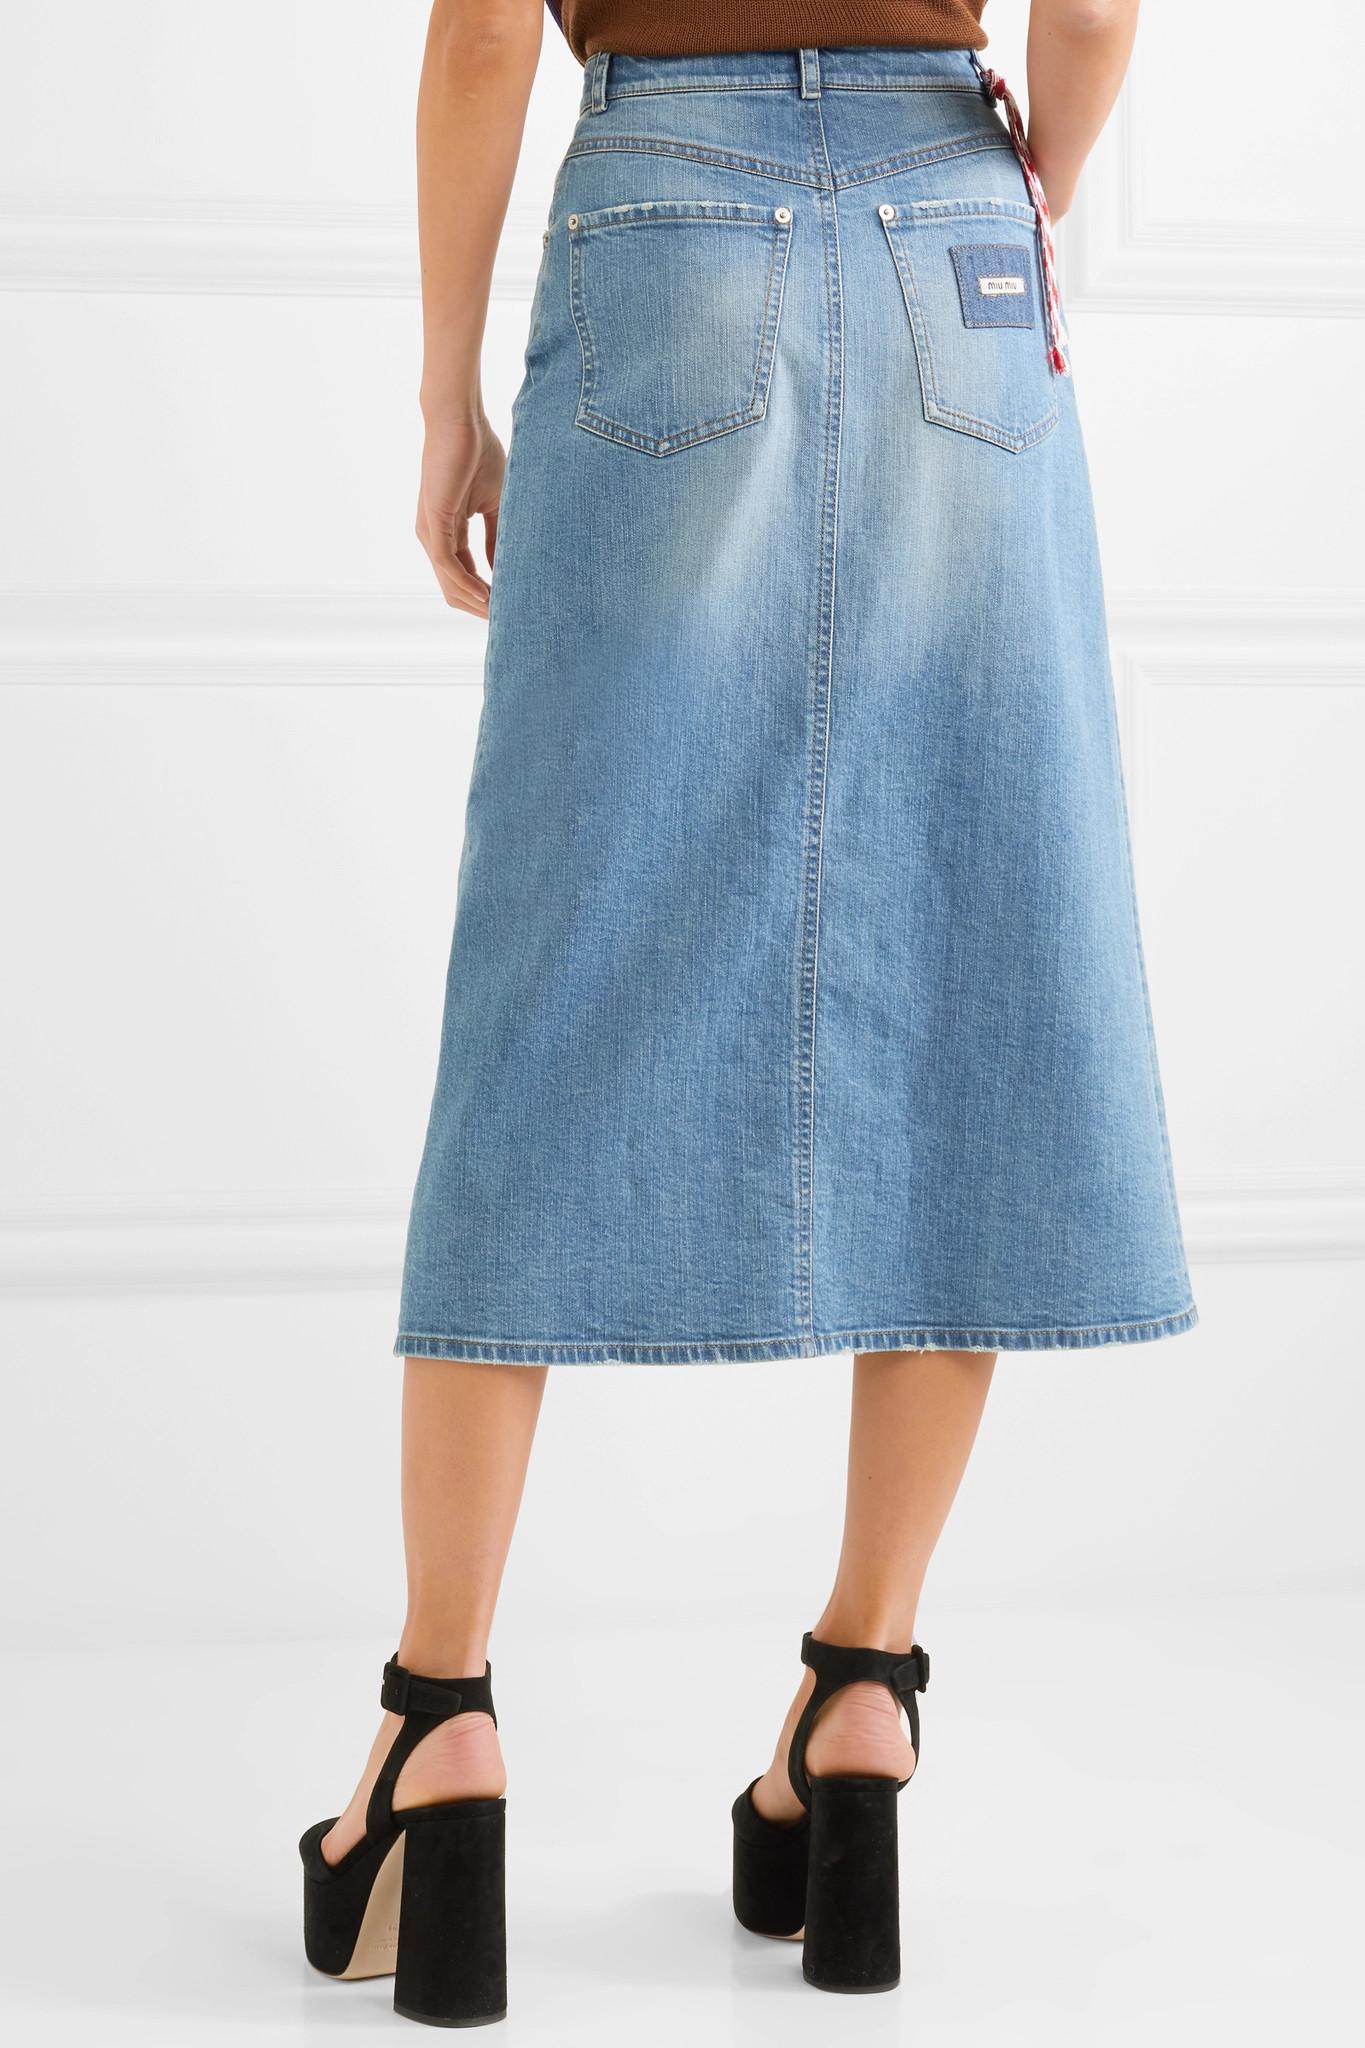 Miu Miu Denim Midi Skirt in Blue - Lyst